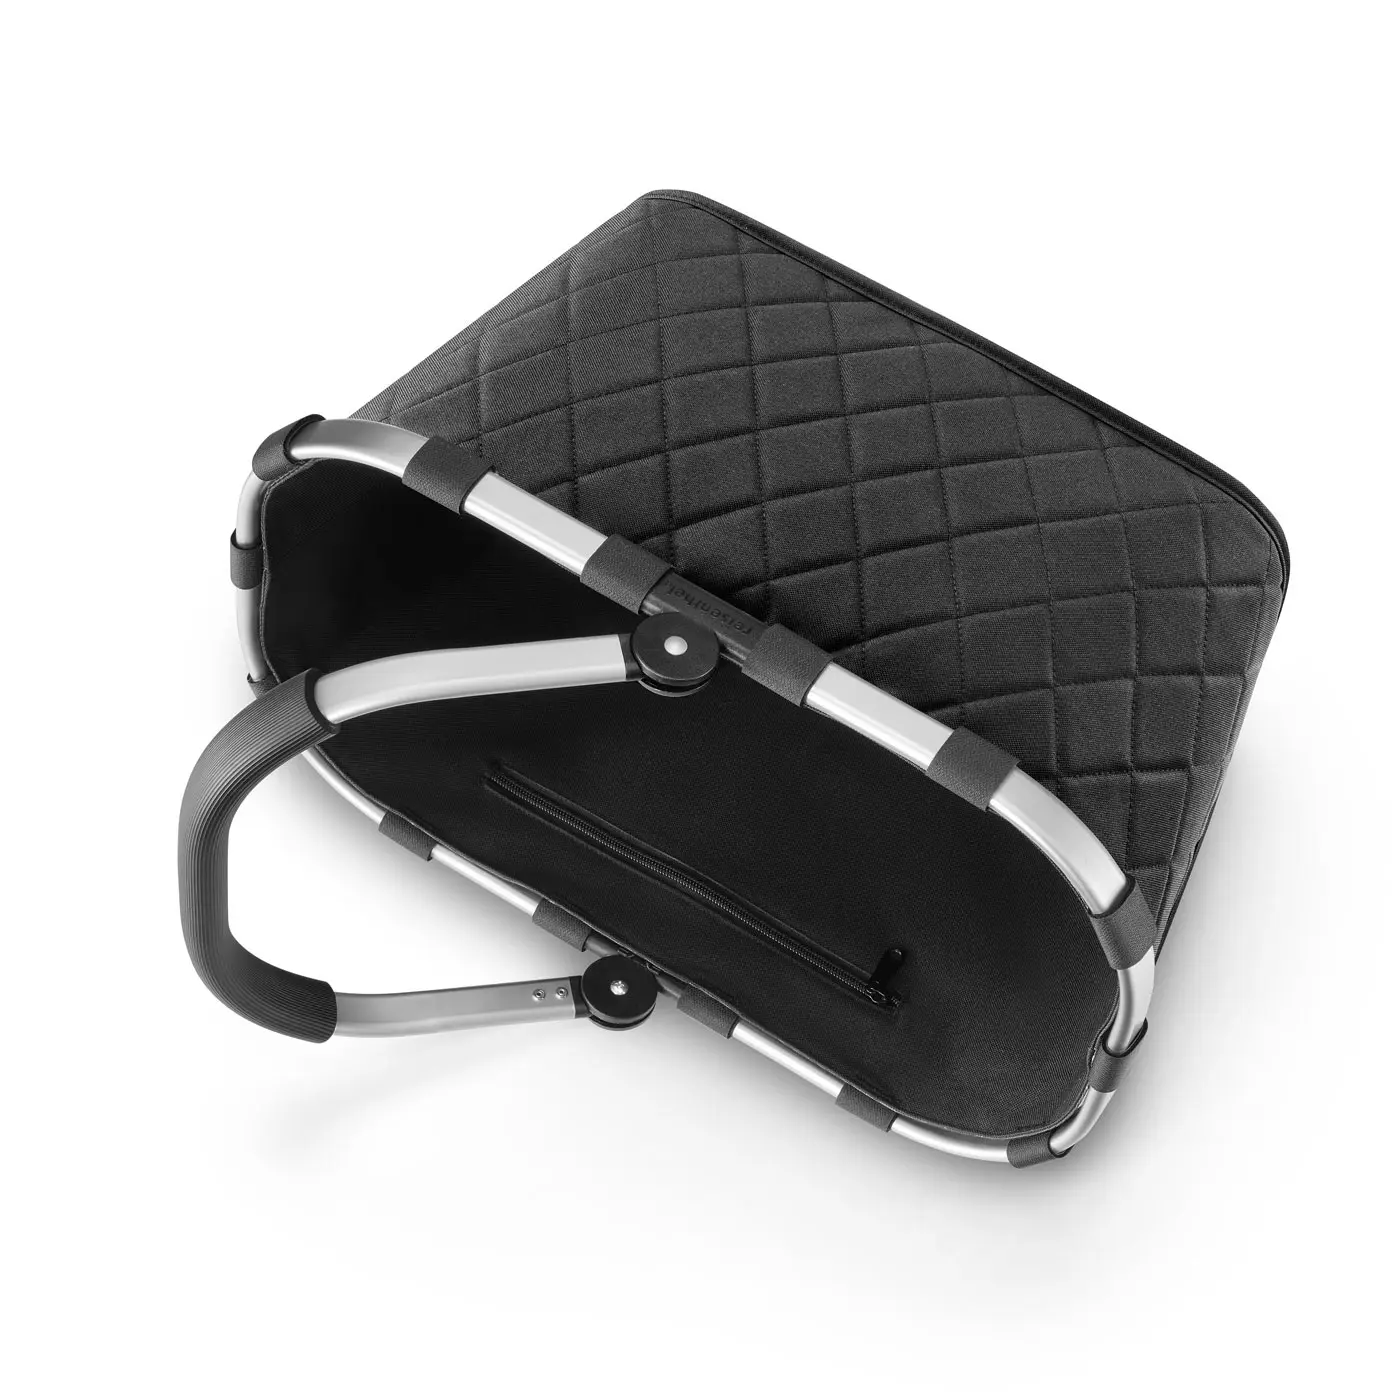 Reisenthel Carrybag in Farbe rhombus black